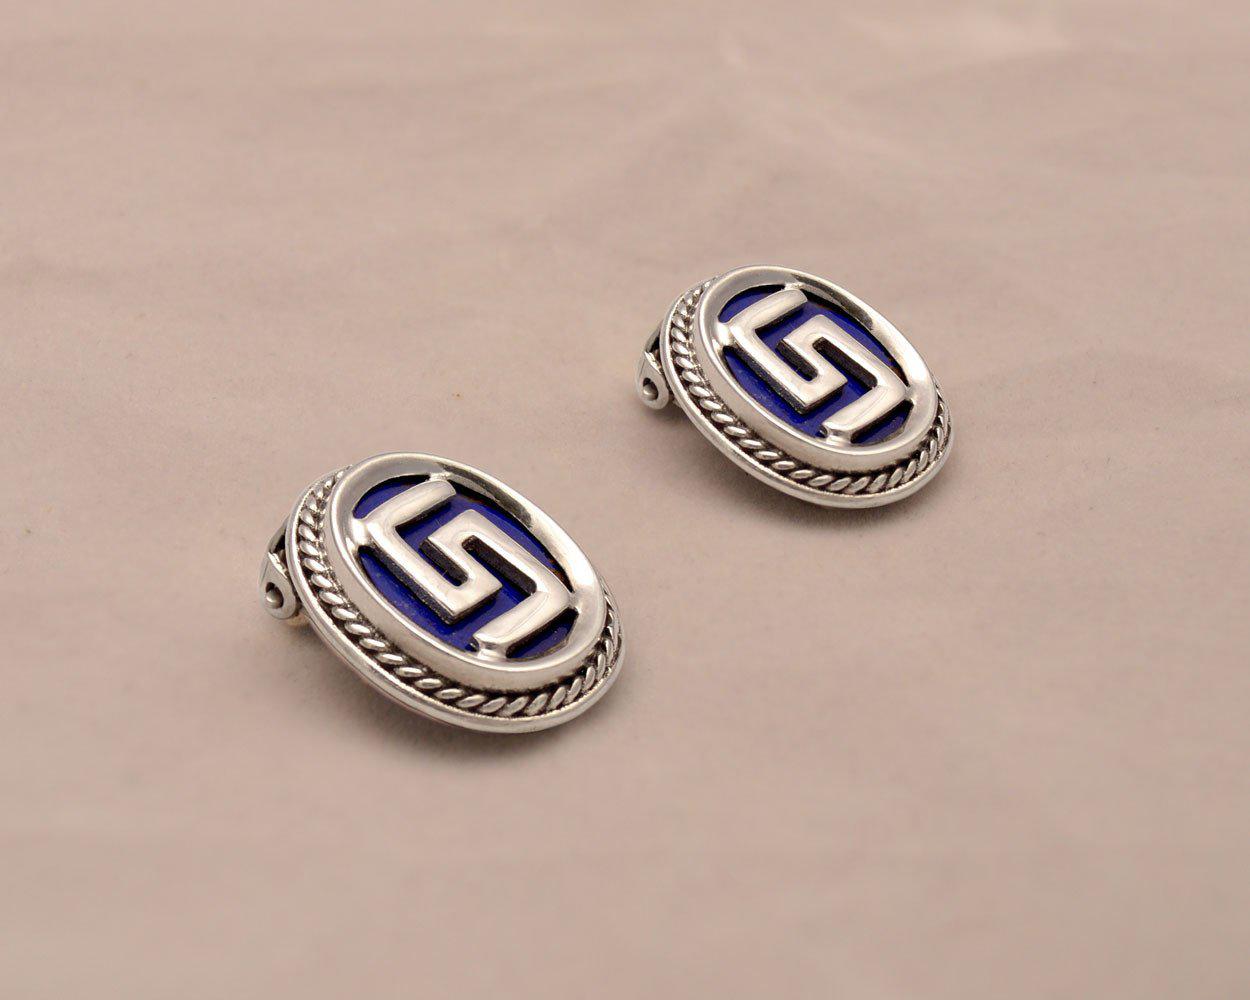 Greek Key Meander Earrings in sterling Silver with Lapis Lazuli